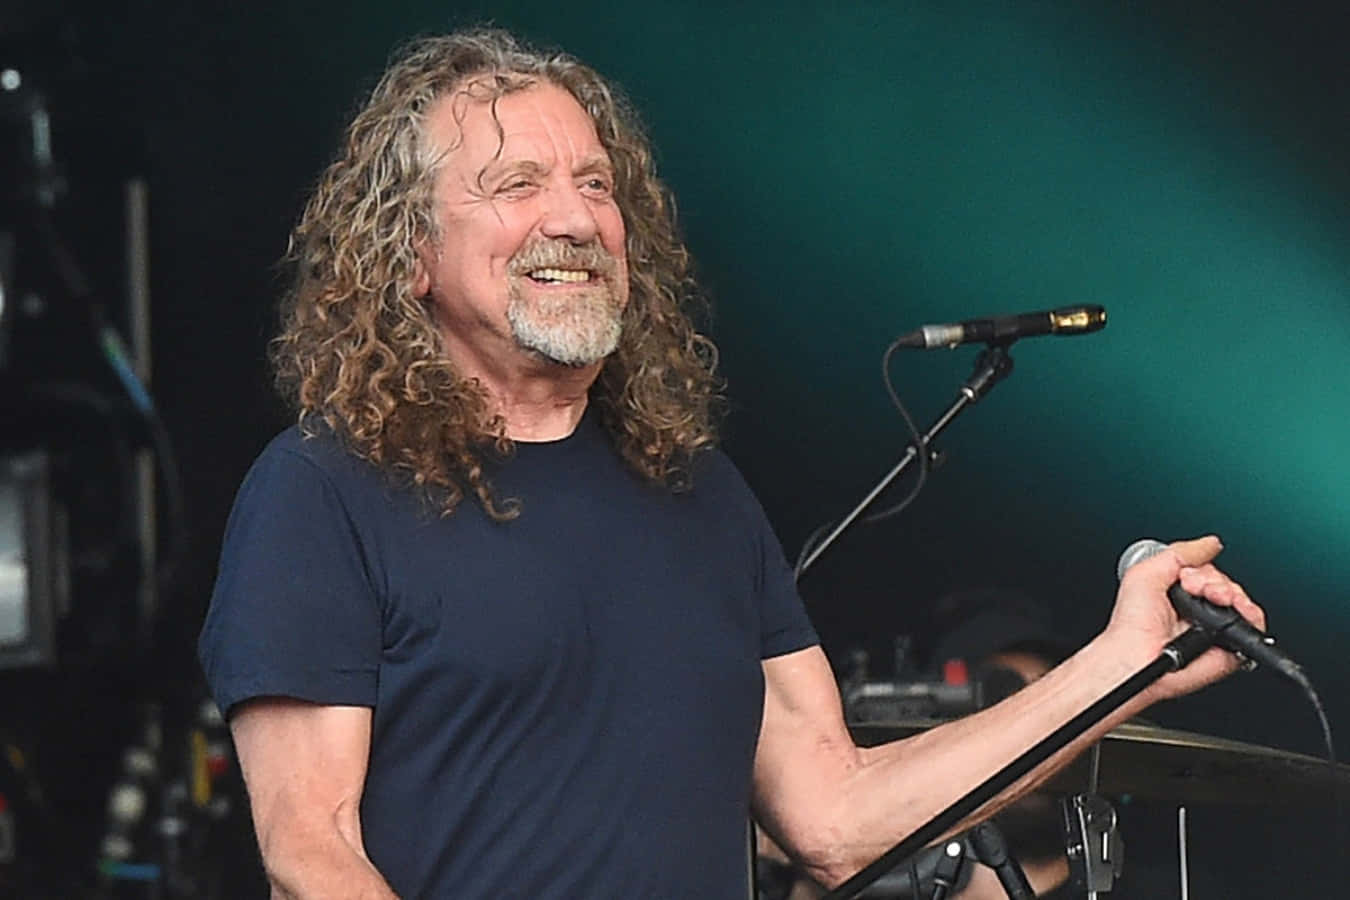 Legendariskerockstjärnan Robert Plant Uppträder